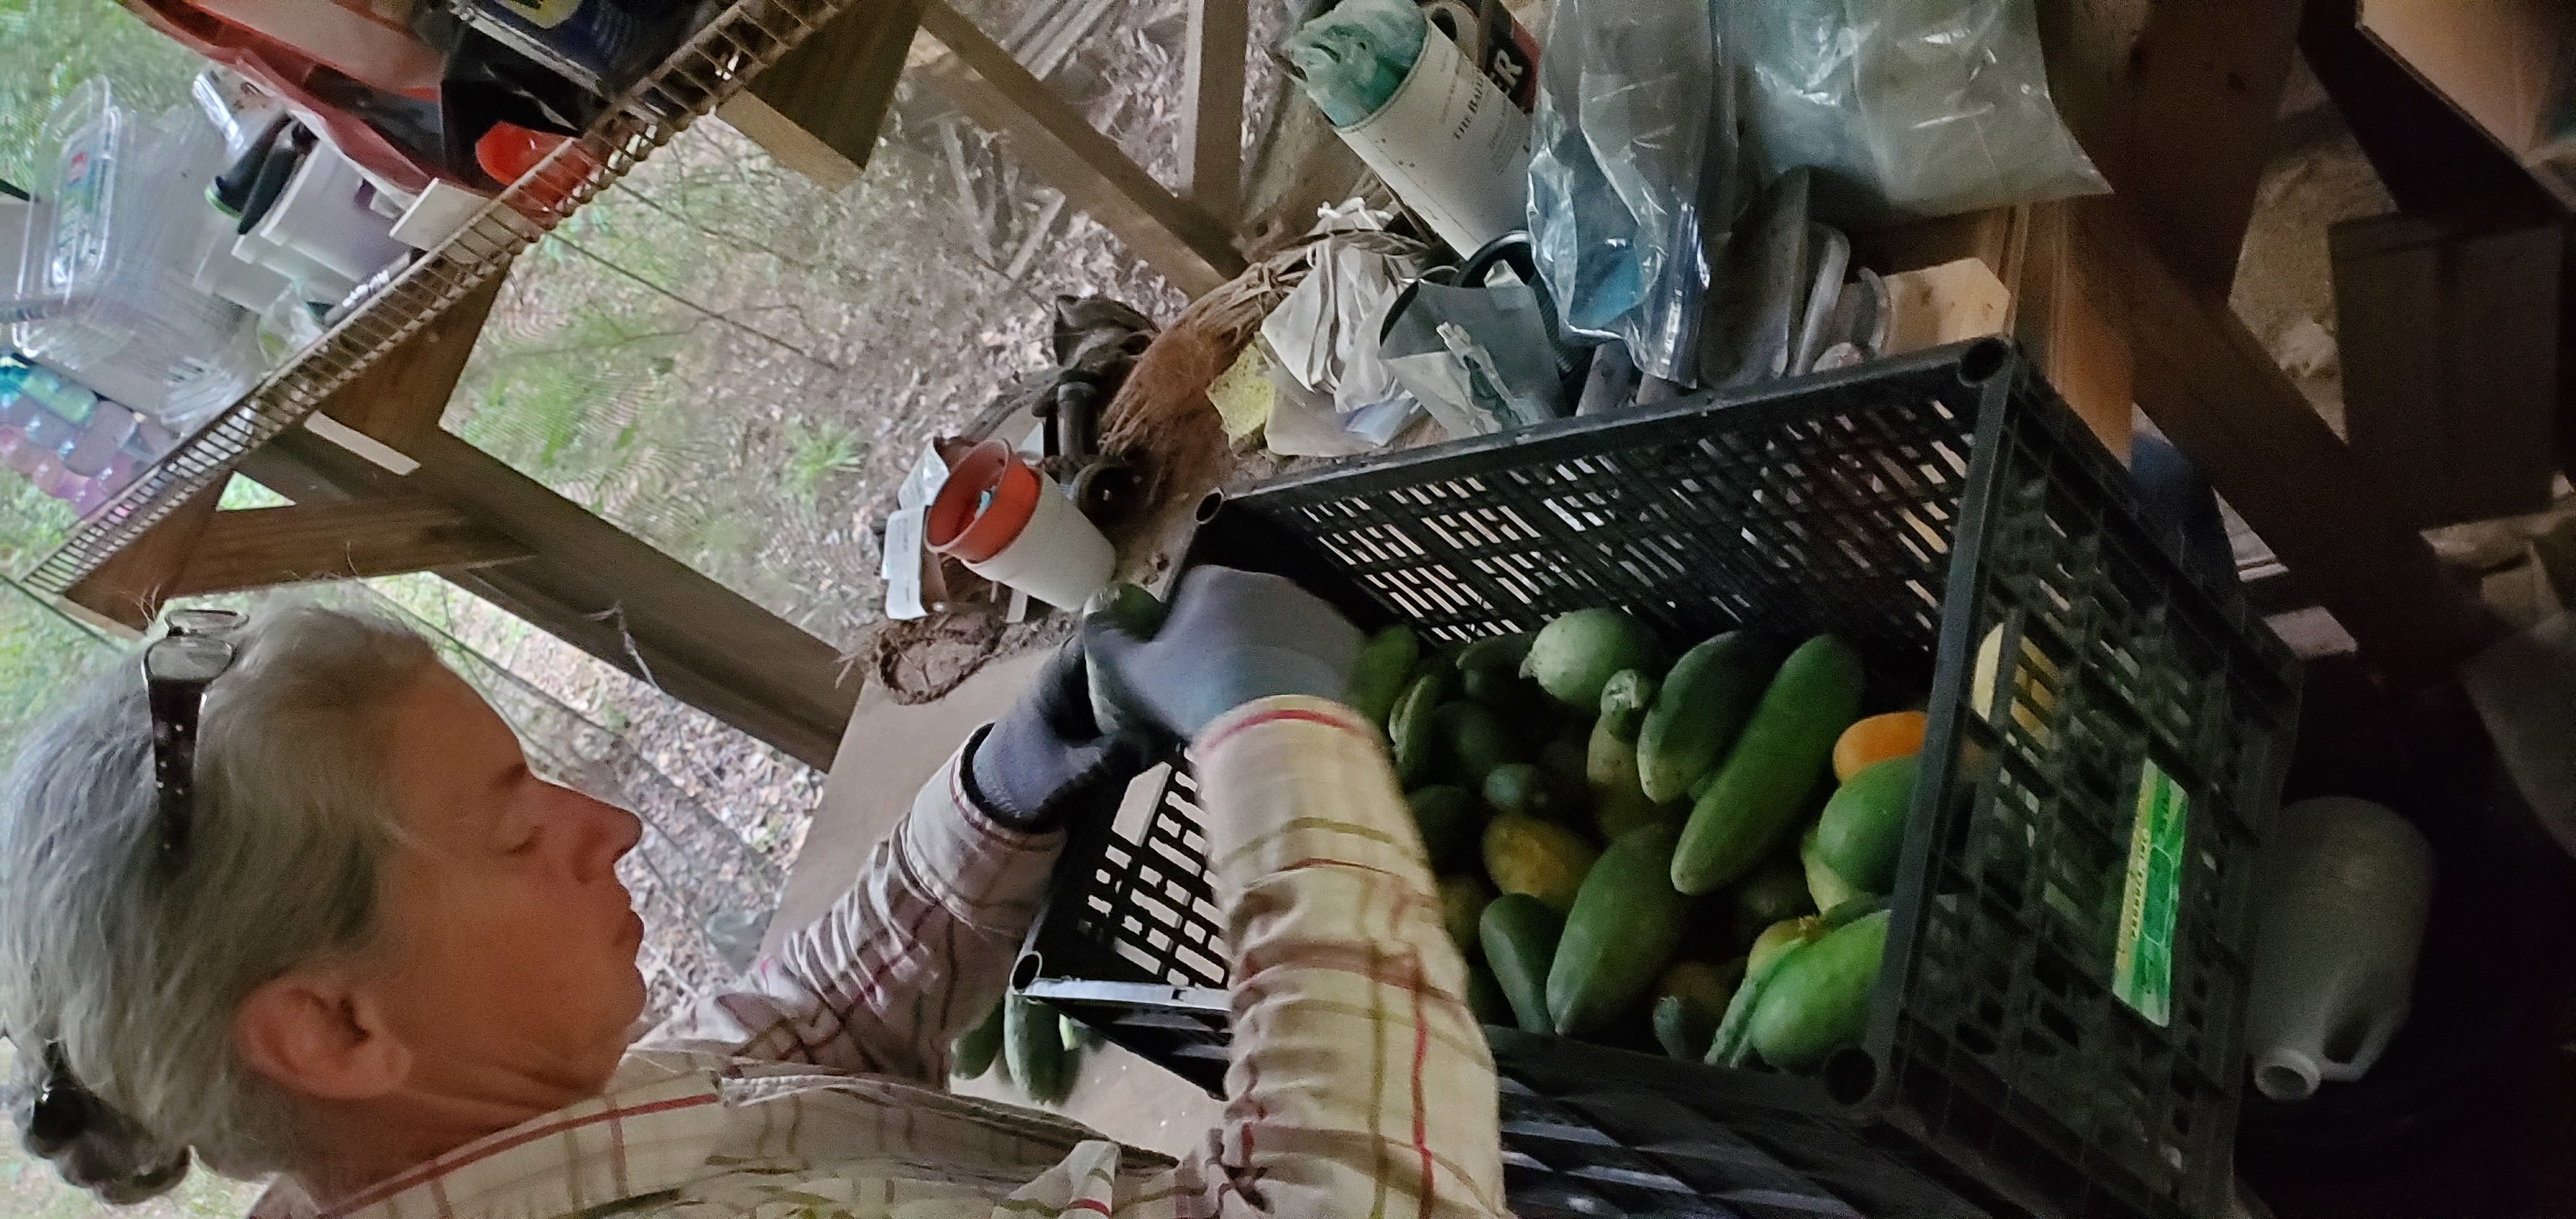 Gretchen sorting vegetables